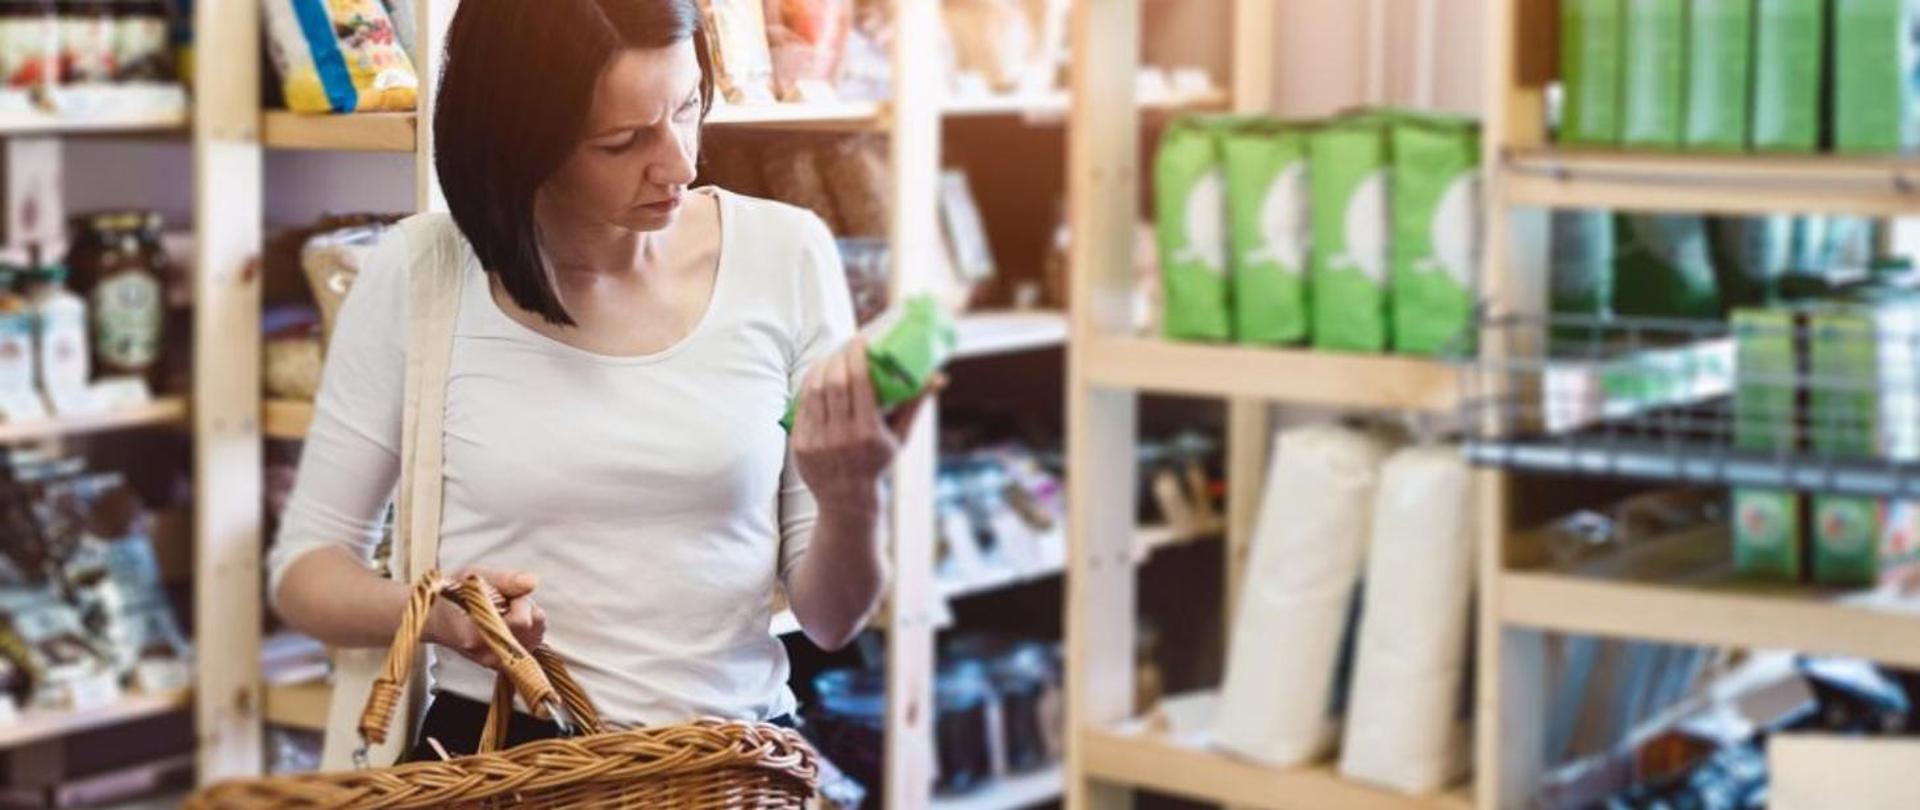 Kobieta robiąca zakupy w sklepie, trzymający wiklinowy koszyk i czytająca skład na produkcie.